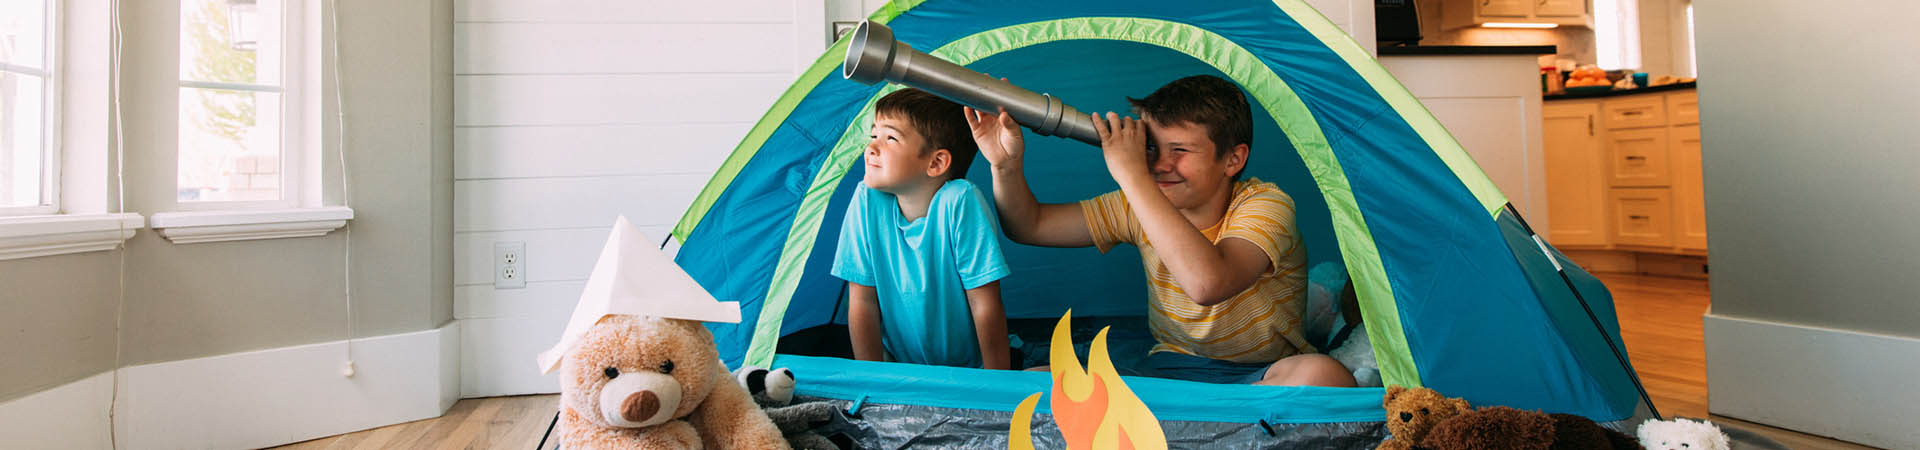 Activité d’intérieur : des enfants jouent au camping dans le salon.